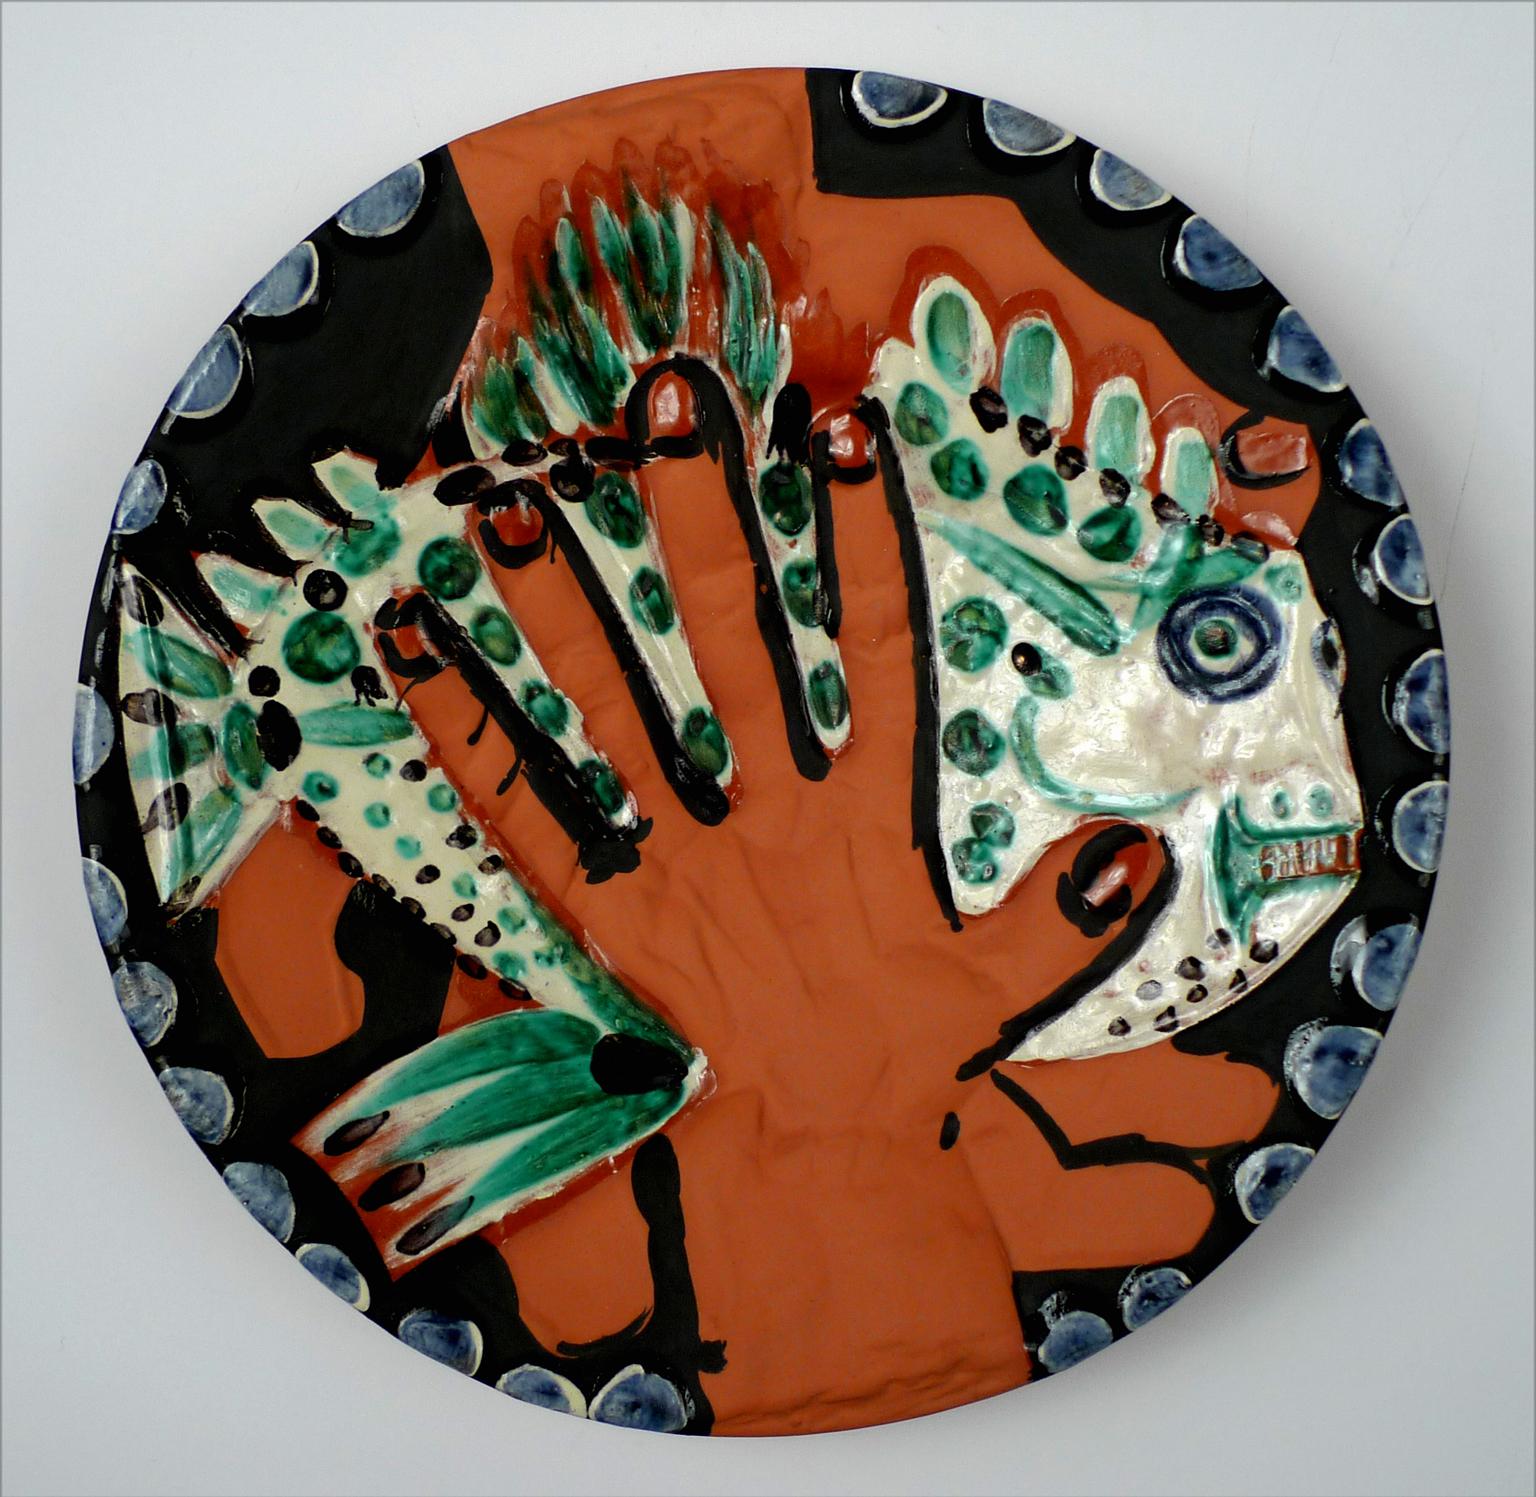 Picasso Ceramic, “Mains au poisson” (A.R. 214) - Art by Pablo Picasso